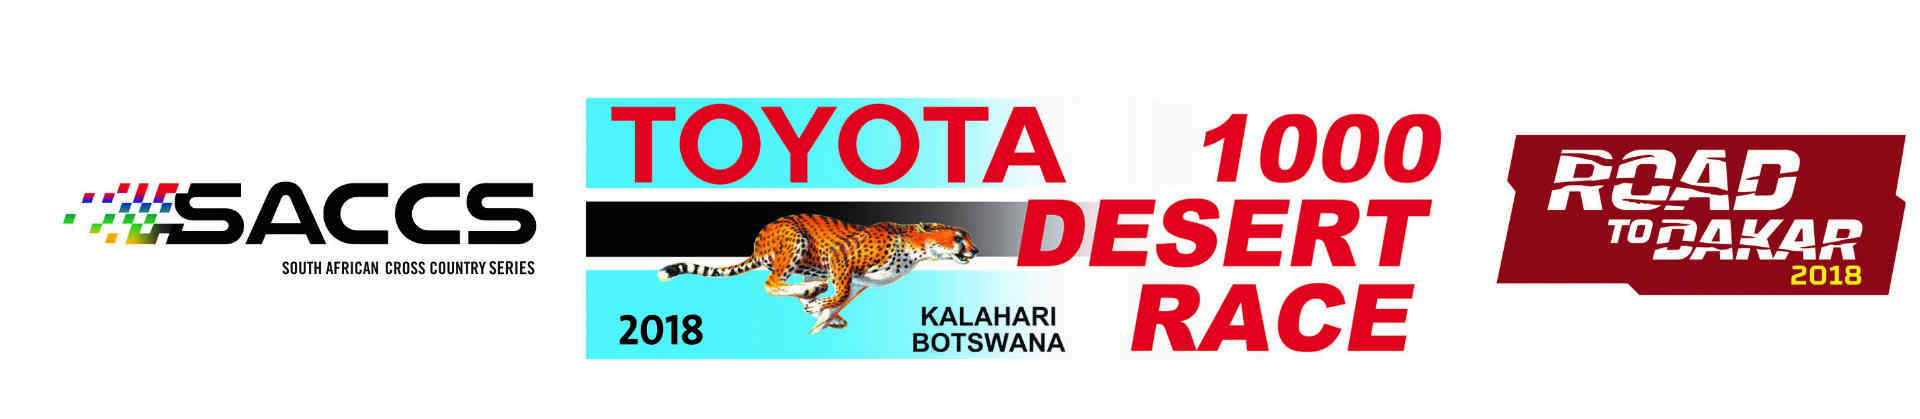 Toyota 1000 Desert Race